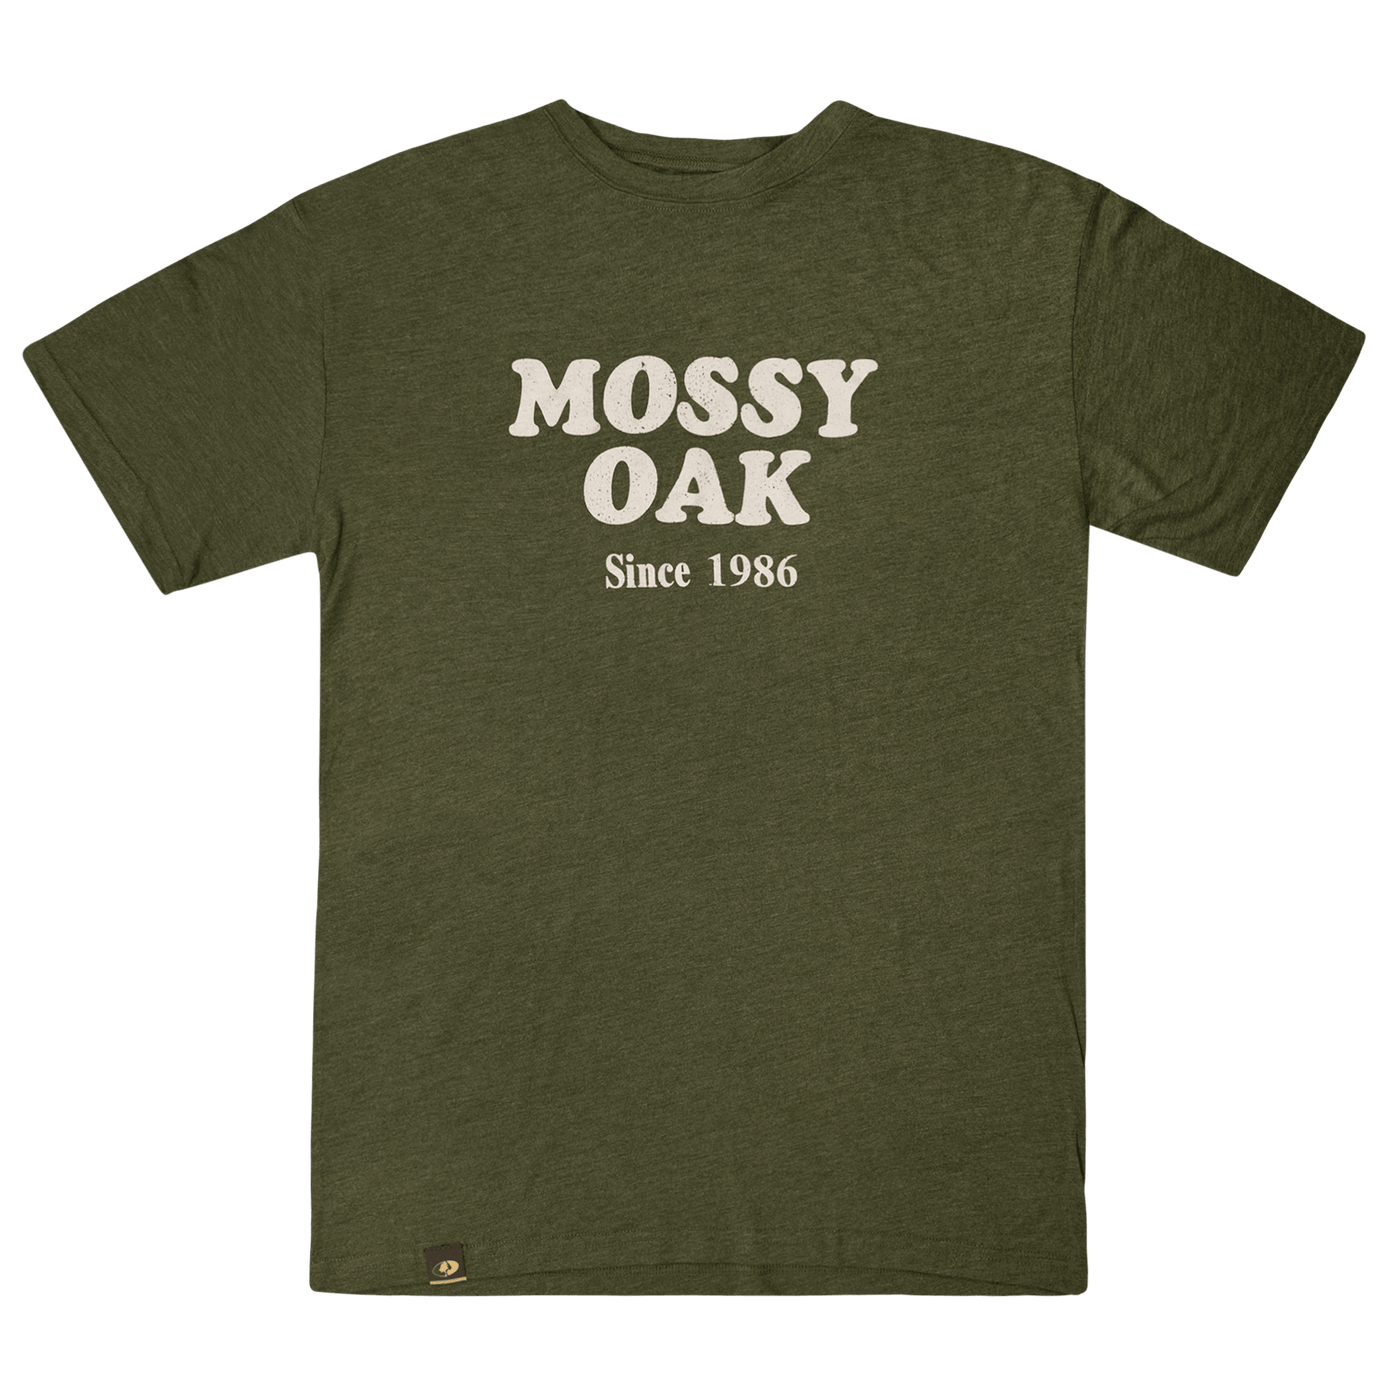 Mossy Oak Since 1986 Tee